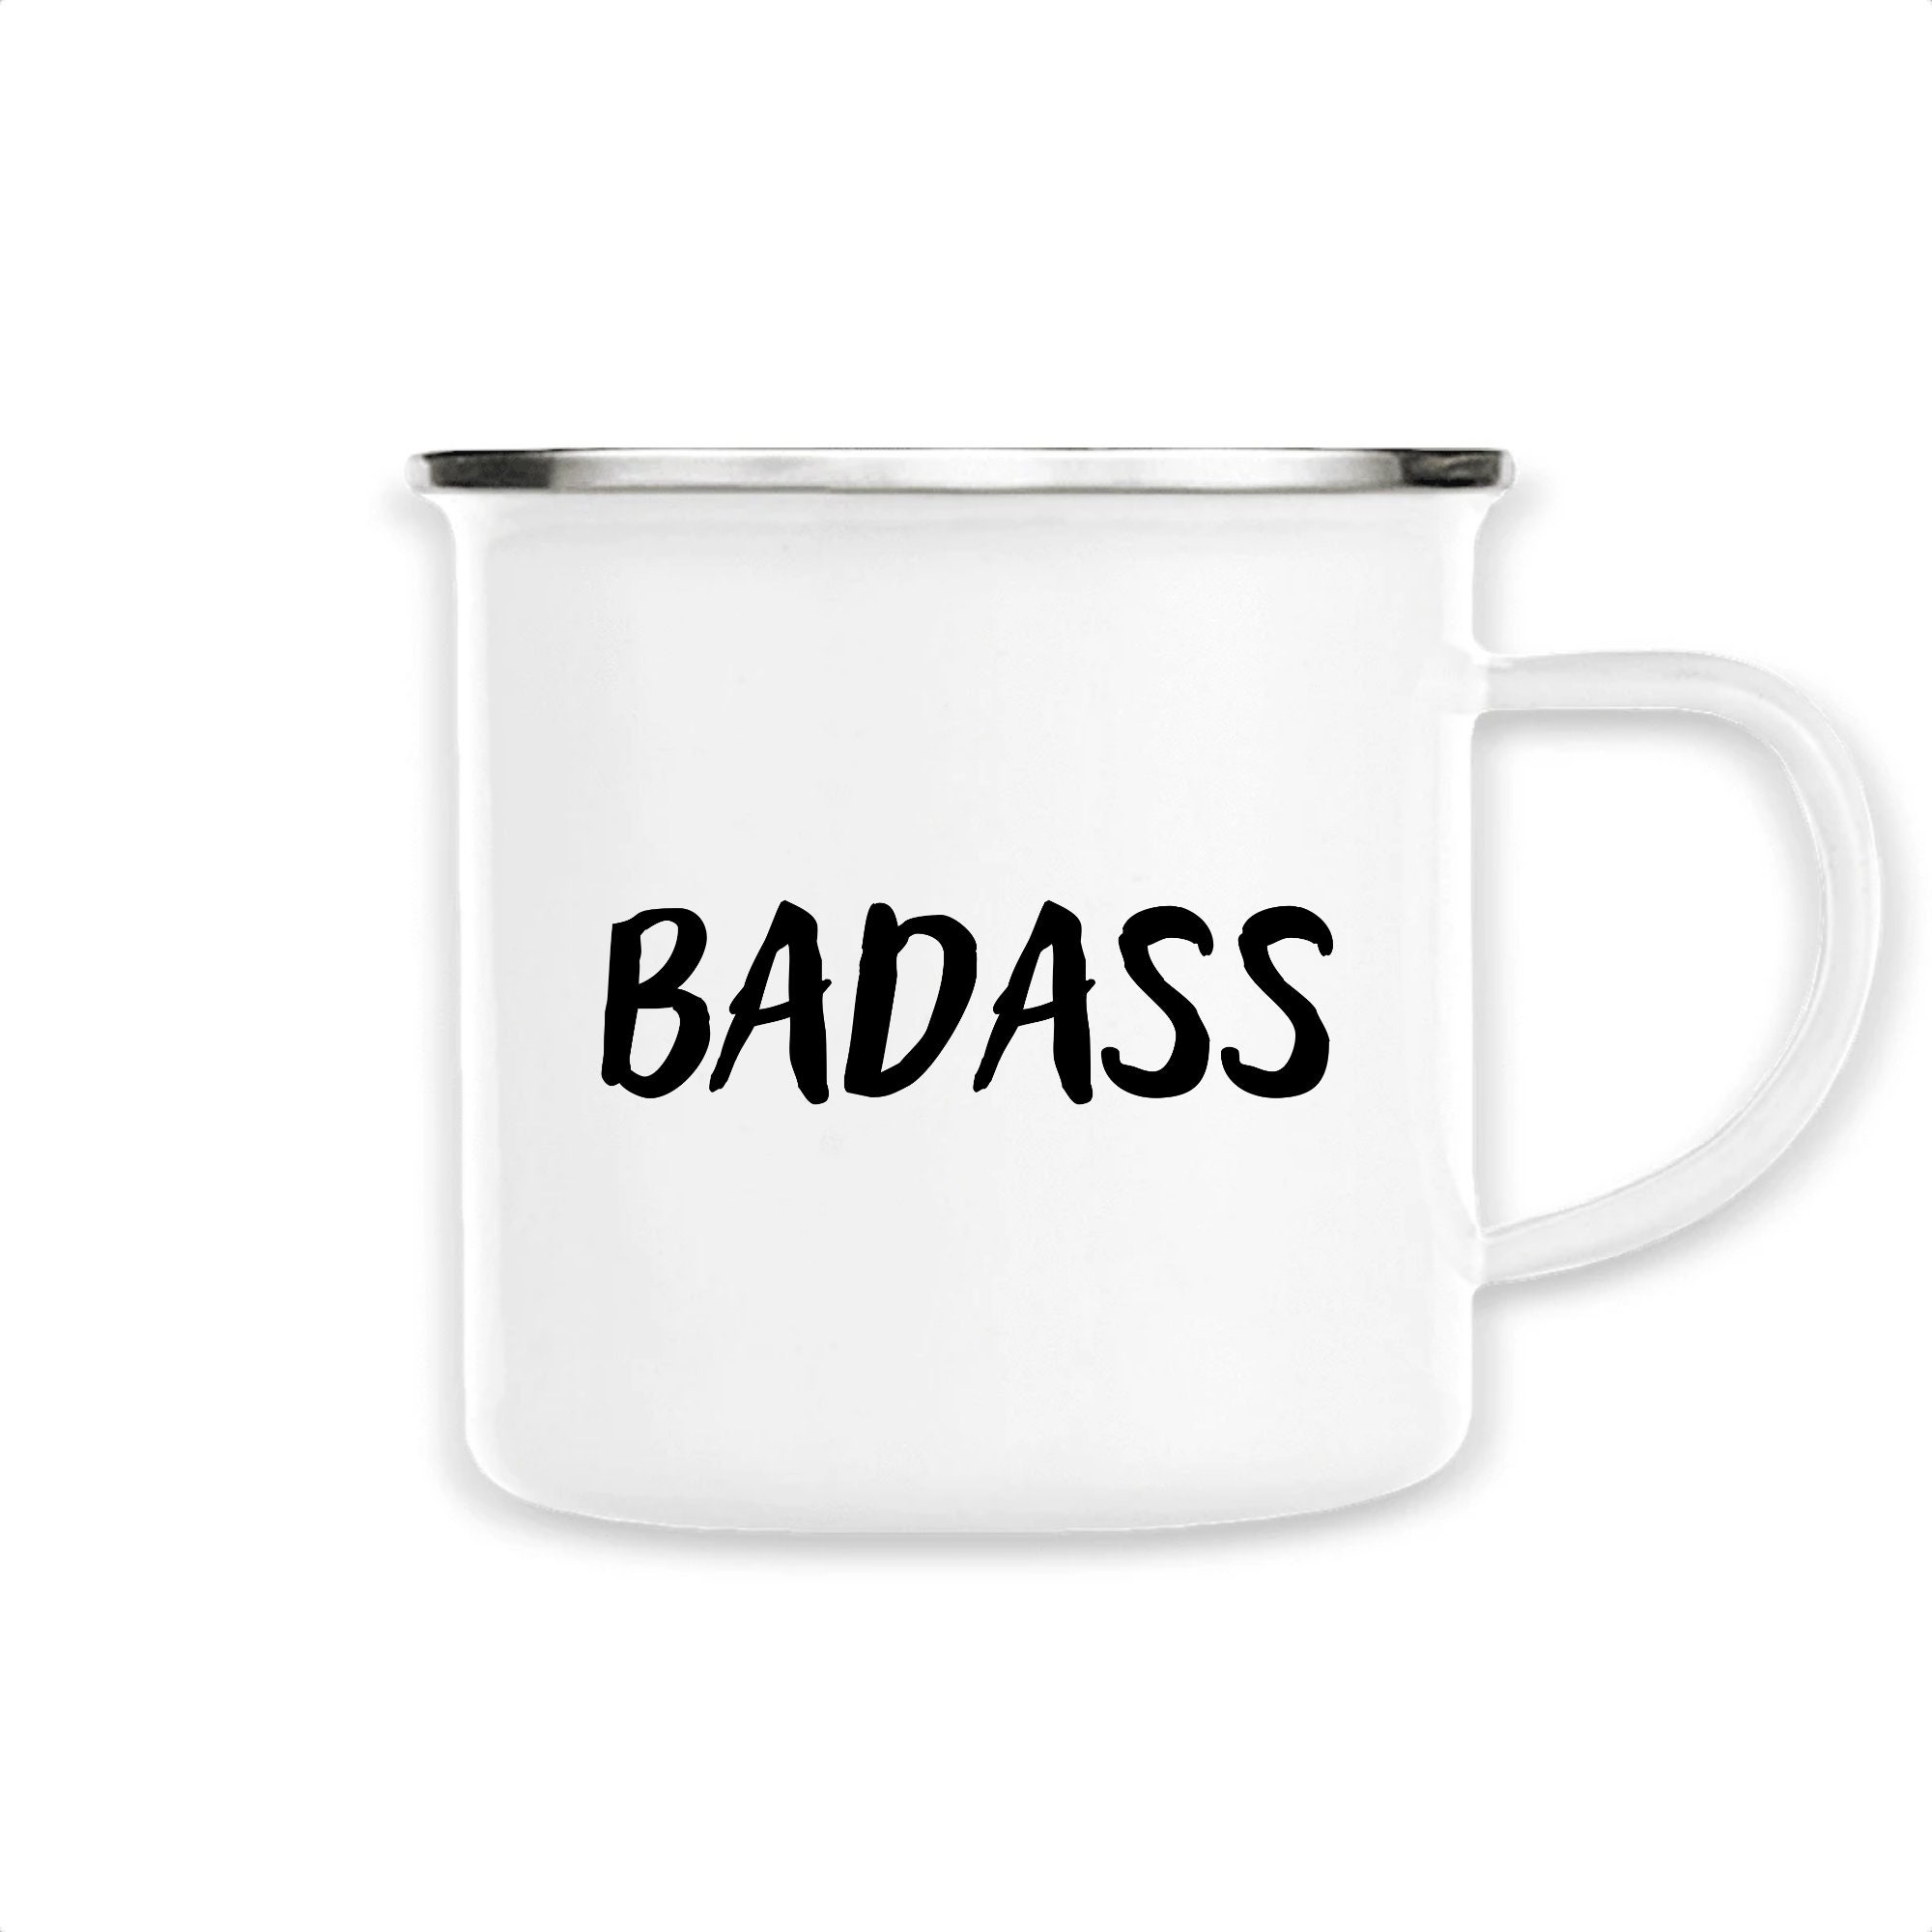 Mug Inox Badass/Cool/Badass/Rebelle/Tasse Émaillée/ Mug Badass/Mug Personnalisé/Mug Girl Power/Cadea